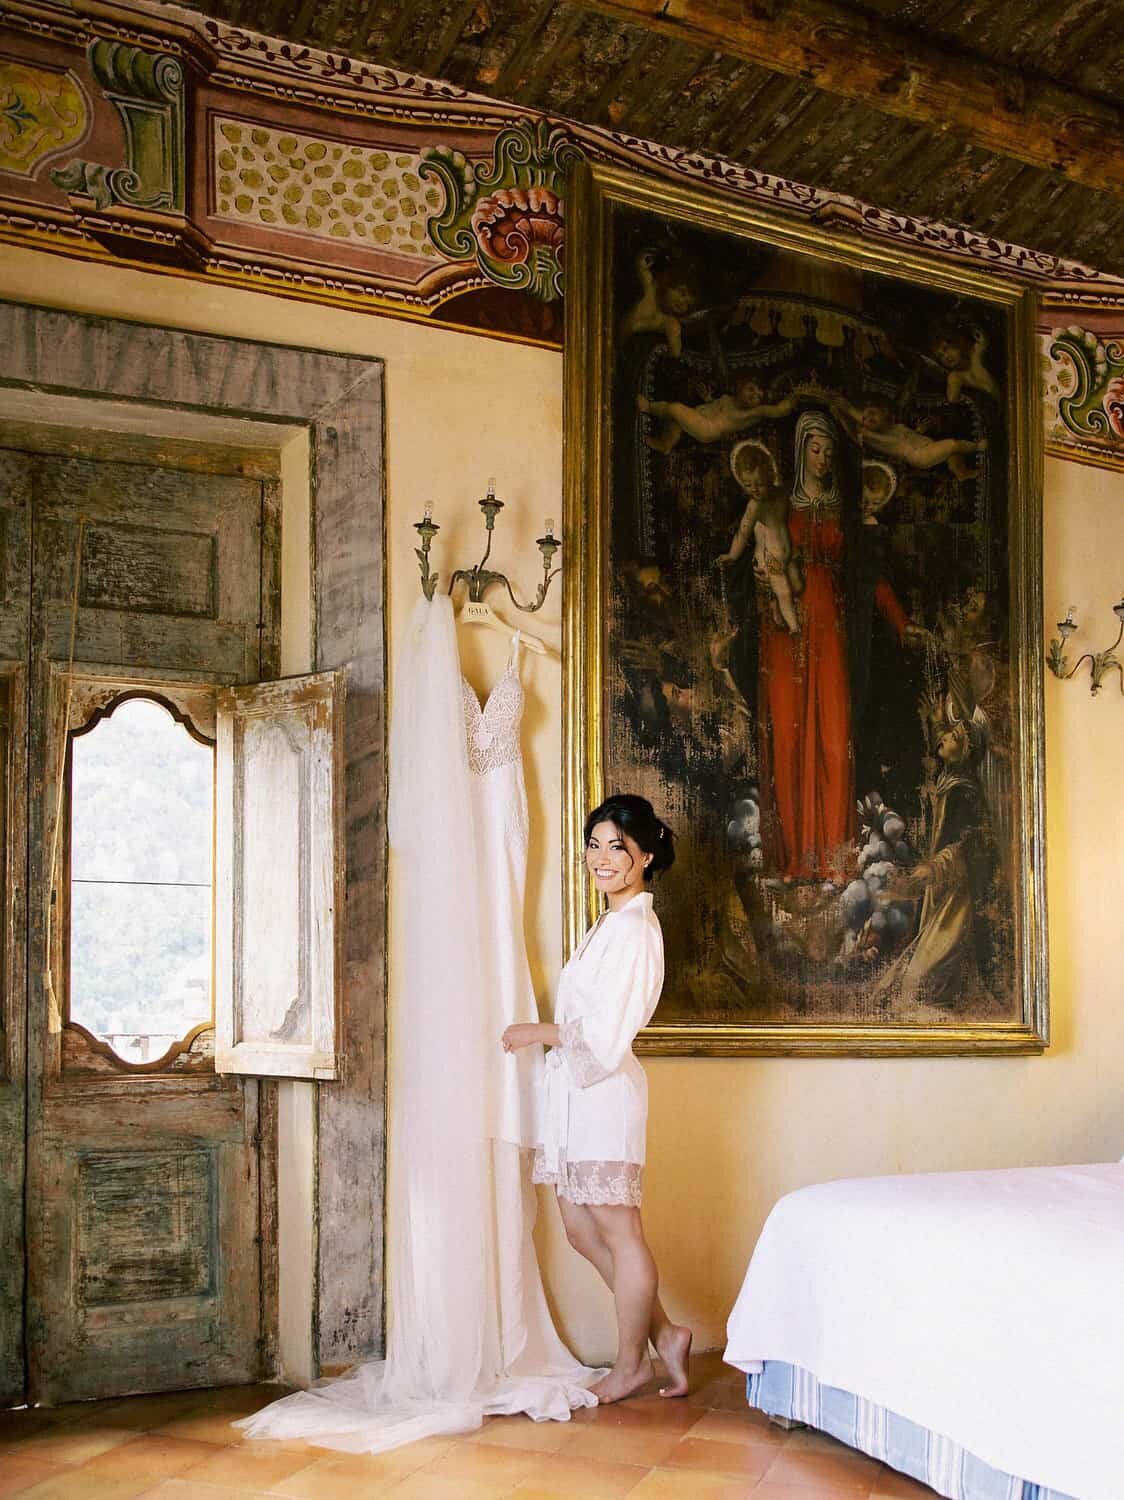 Positano-wedding-villa-San-Giacomo-bride-getting-ready-by-Julia-Kaptelova-Photography-201